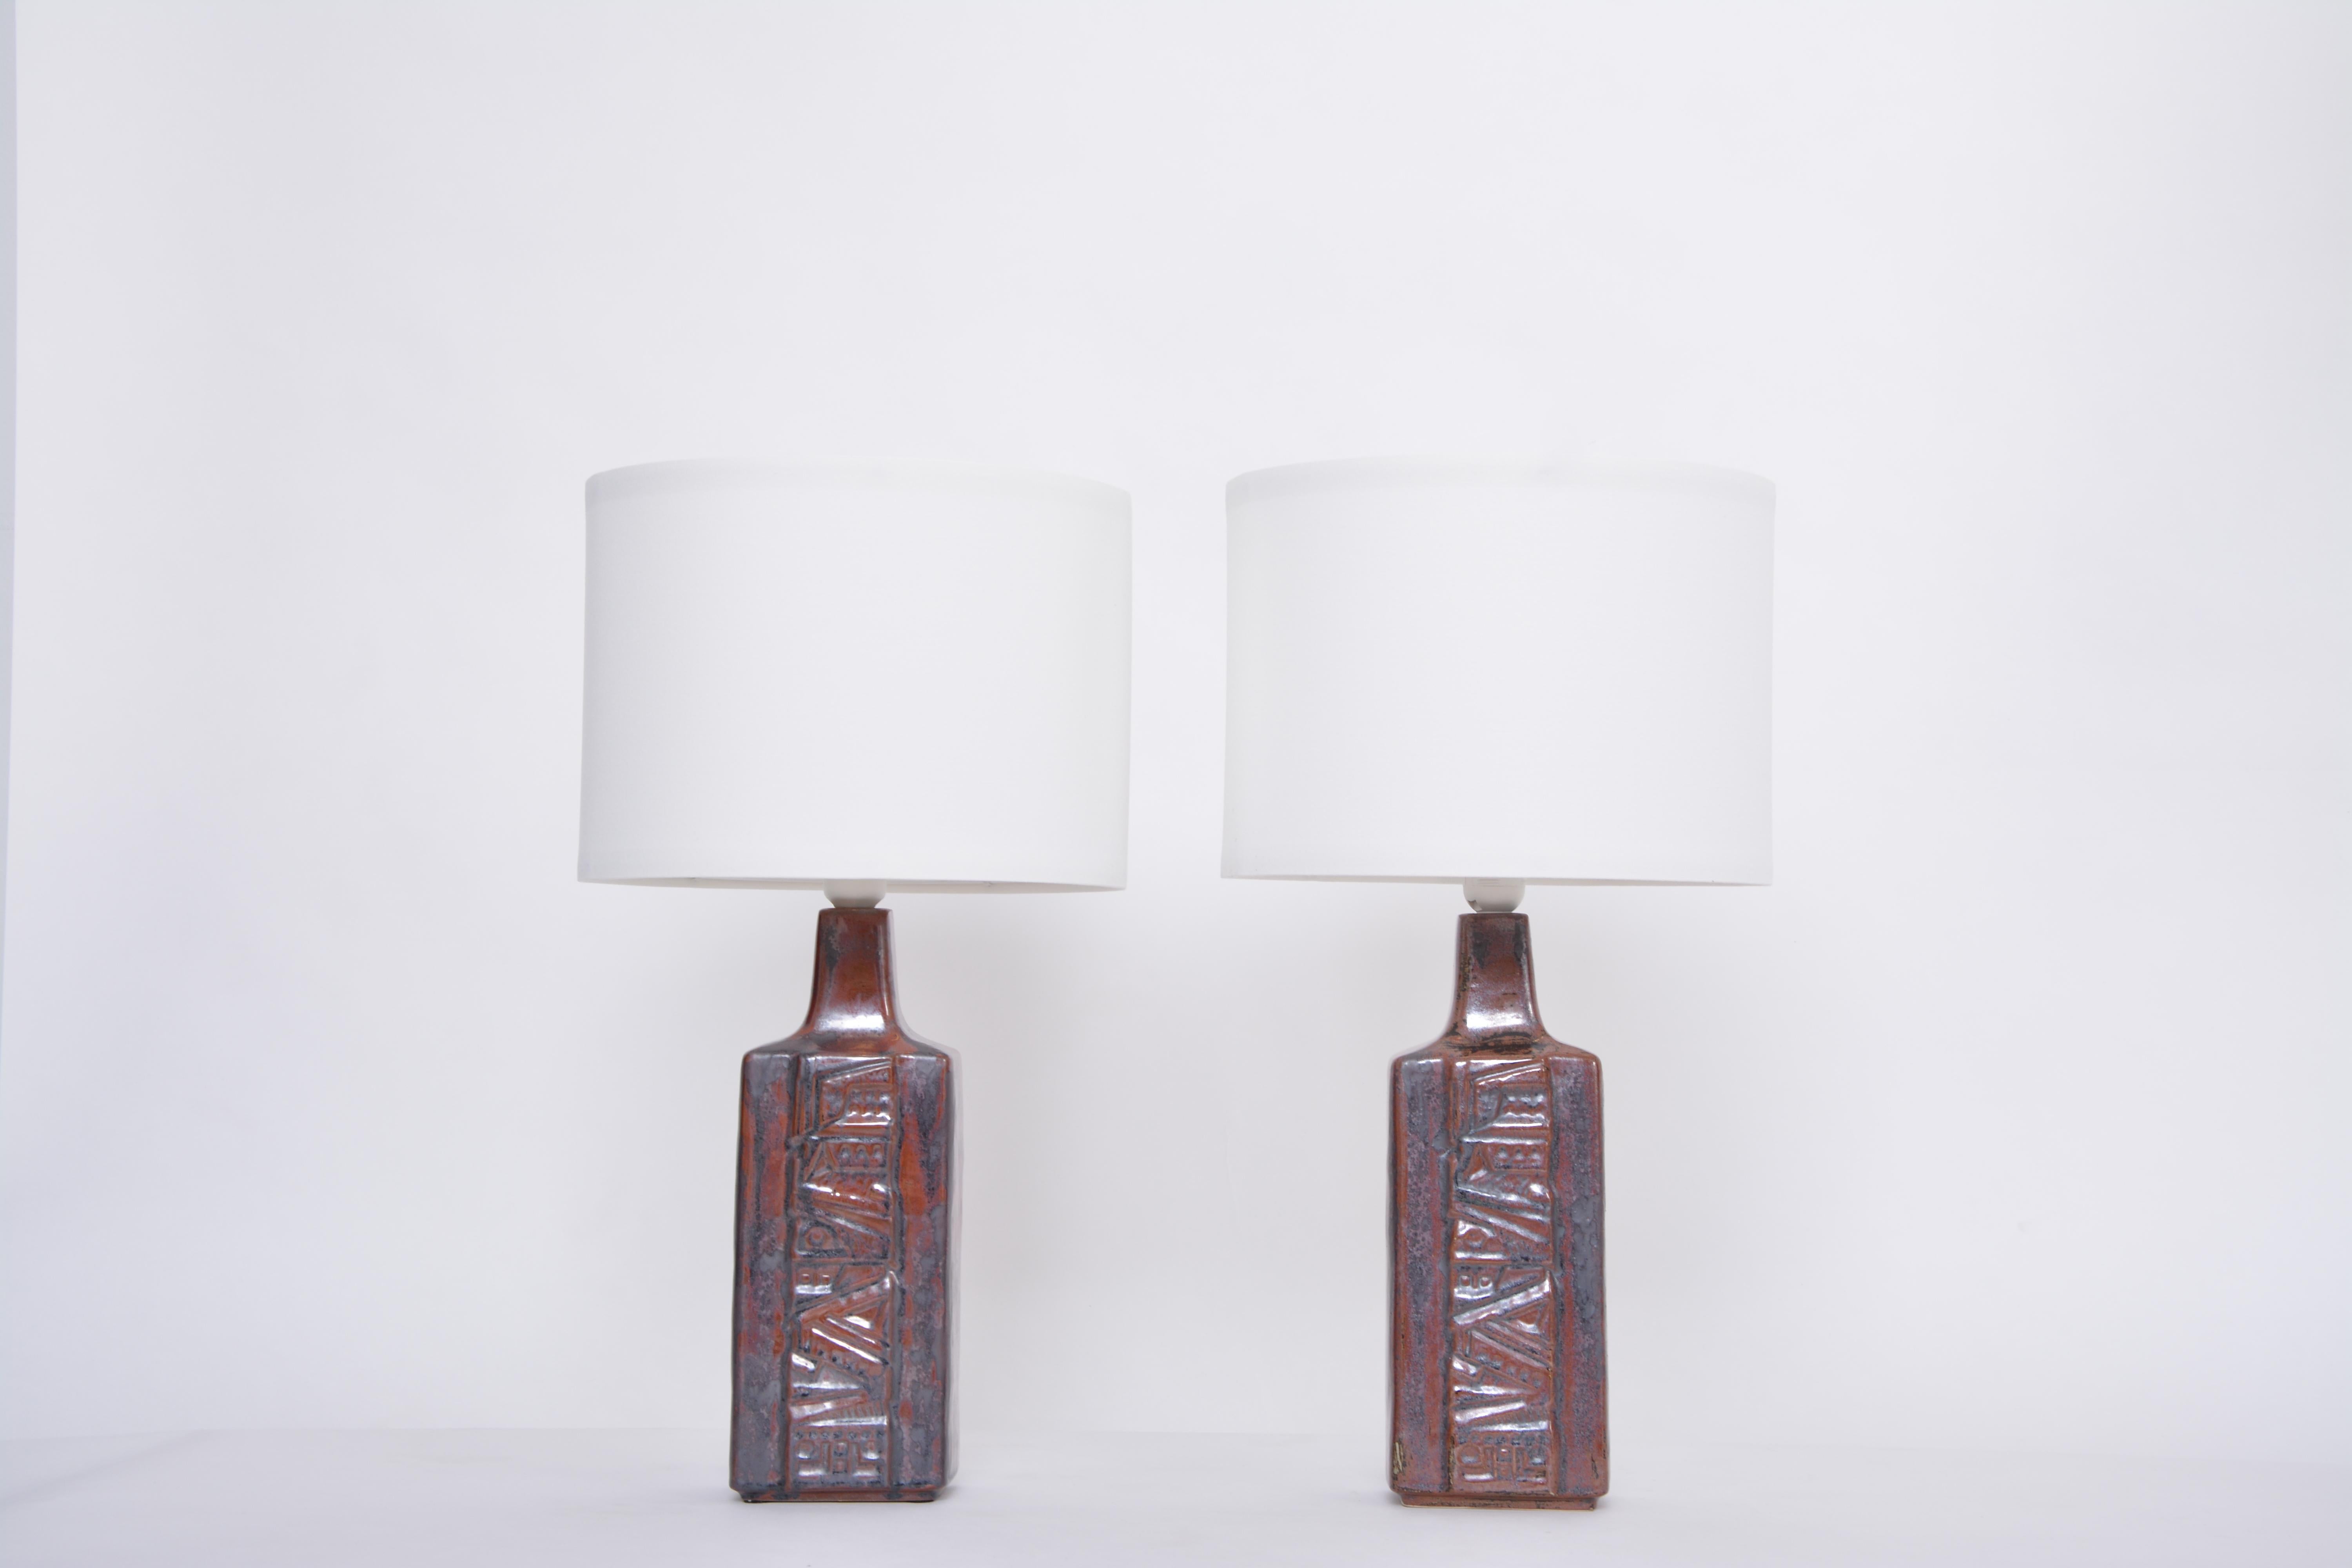 Paire de lampes de bureau danoises en céramique de style mi-siècle moderne par Desiree Stentoj
Ces lampes ont été produites par la société danoise Desiree Stentoj probablement dans les années 1960. Les lampes sont en grès émaillé. Les bases